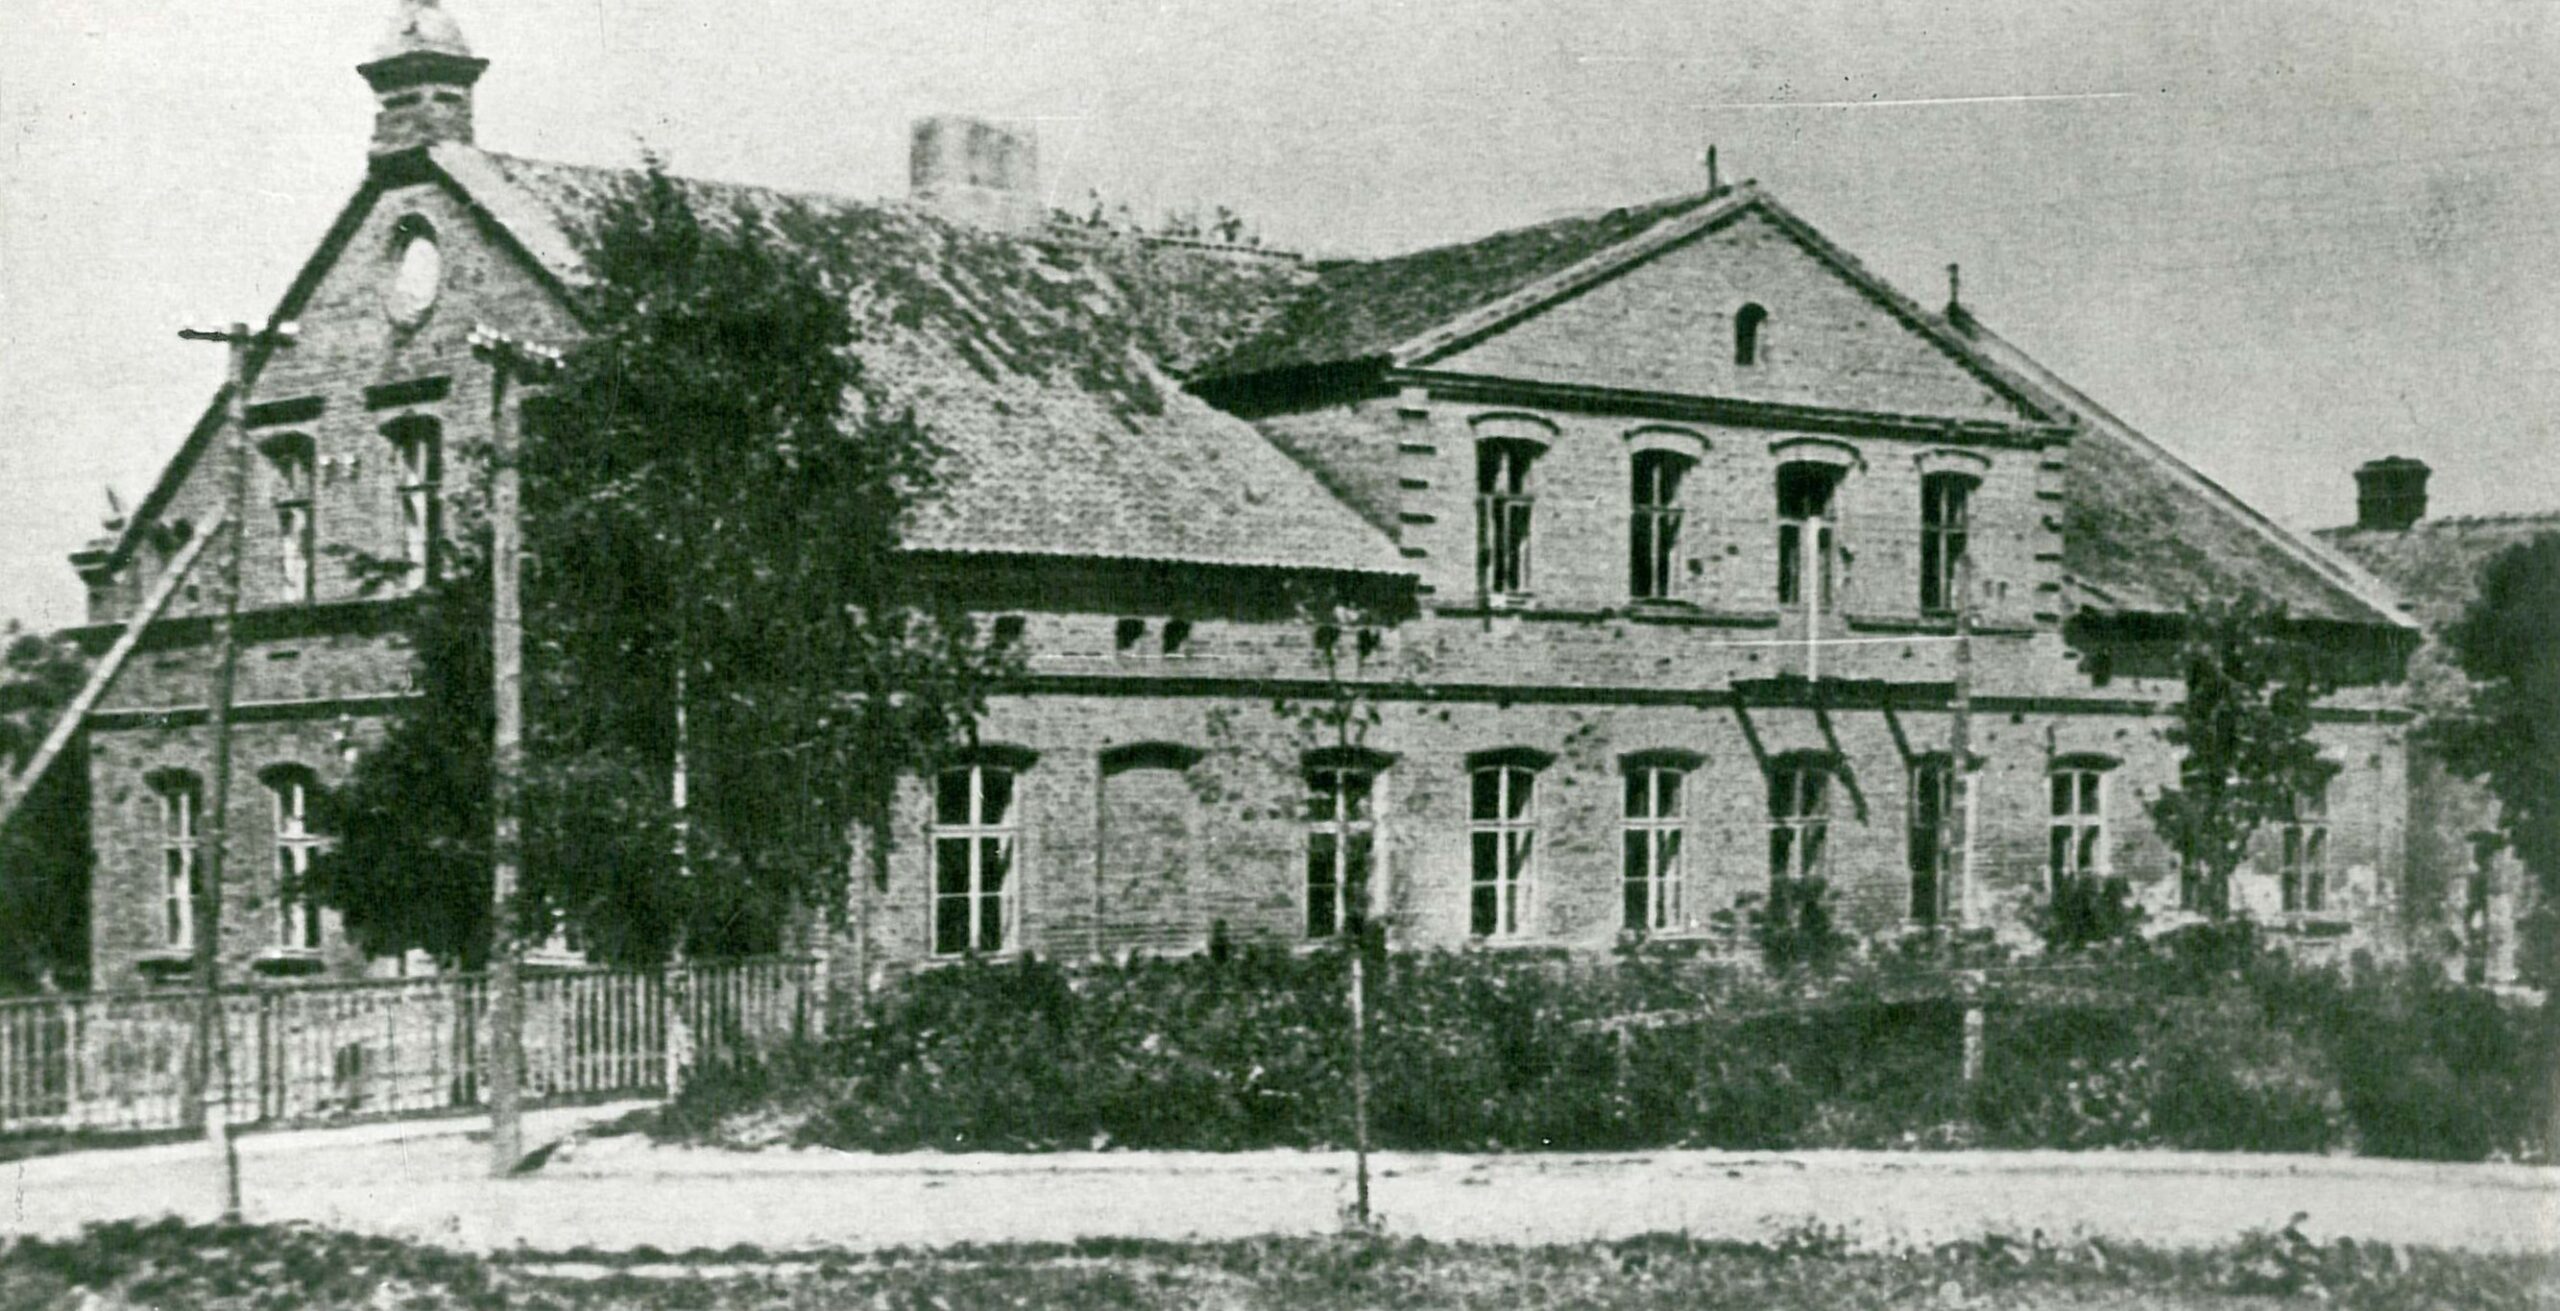 Buvę gimnazijos rūmai. Apie 1954 m.